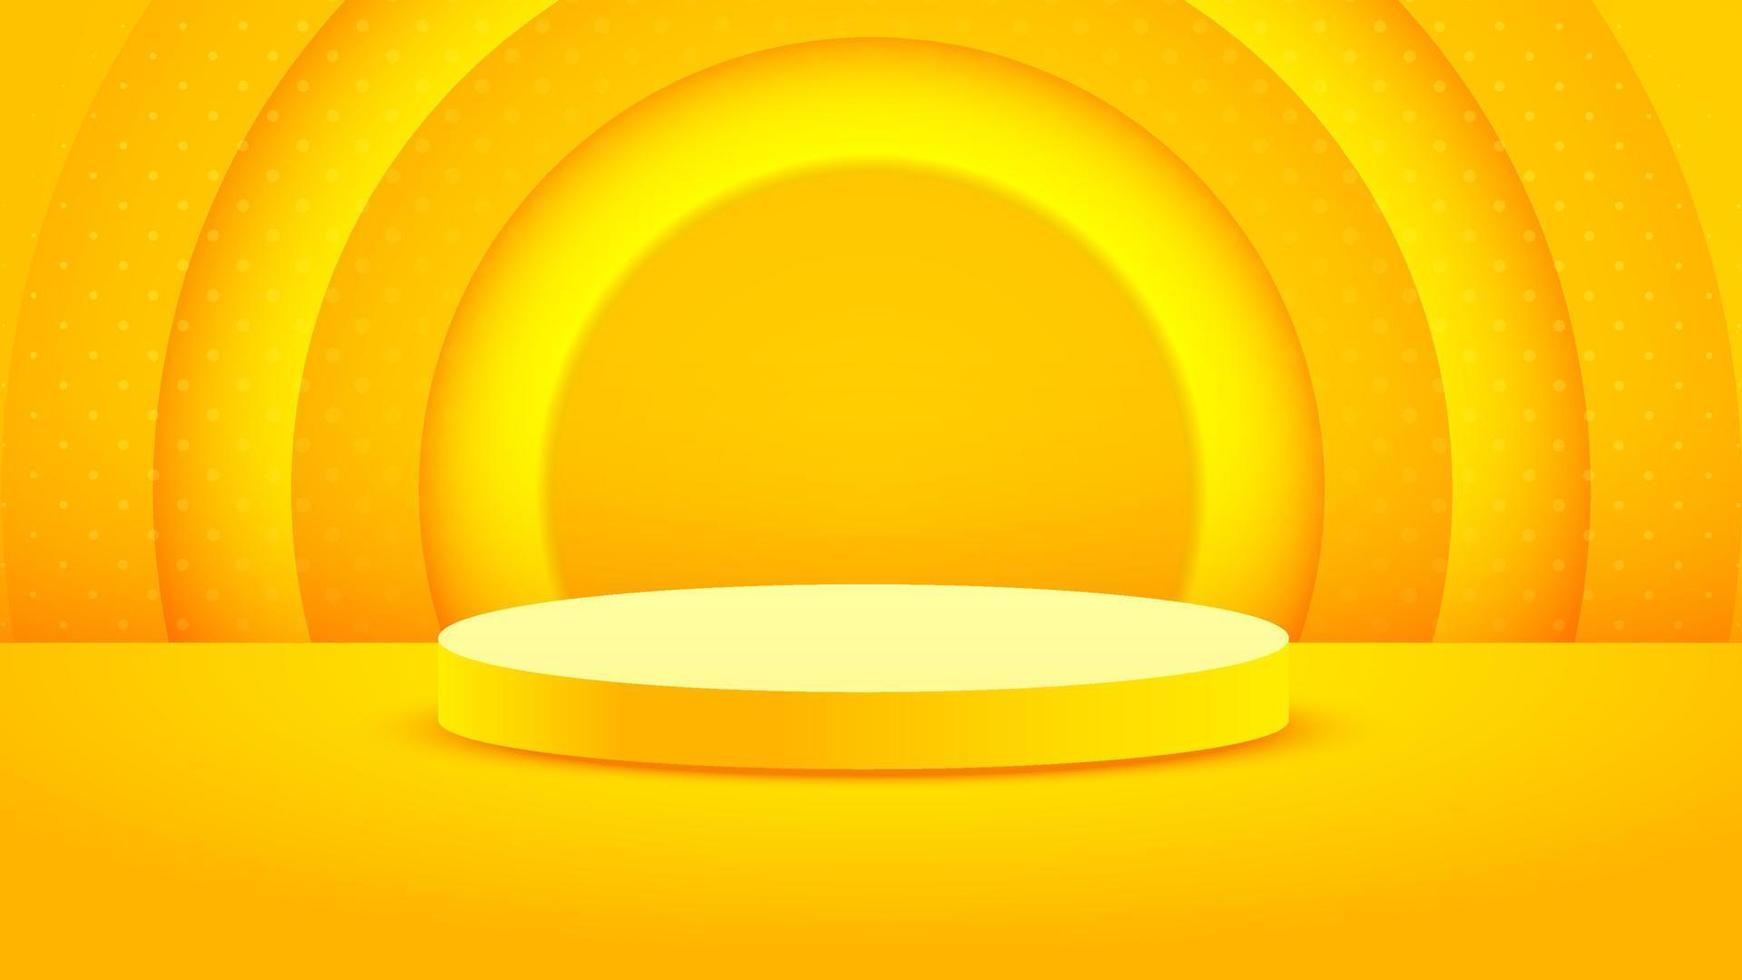 minimalismo de fundo em relevo amarelo realista com vetor de pódio em branco 3d para colocar seu produto, ilustração de banner abstrato